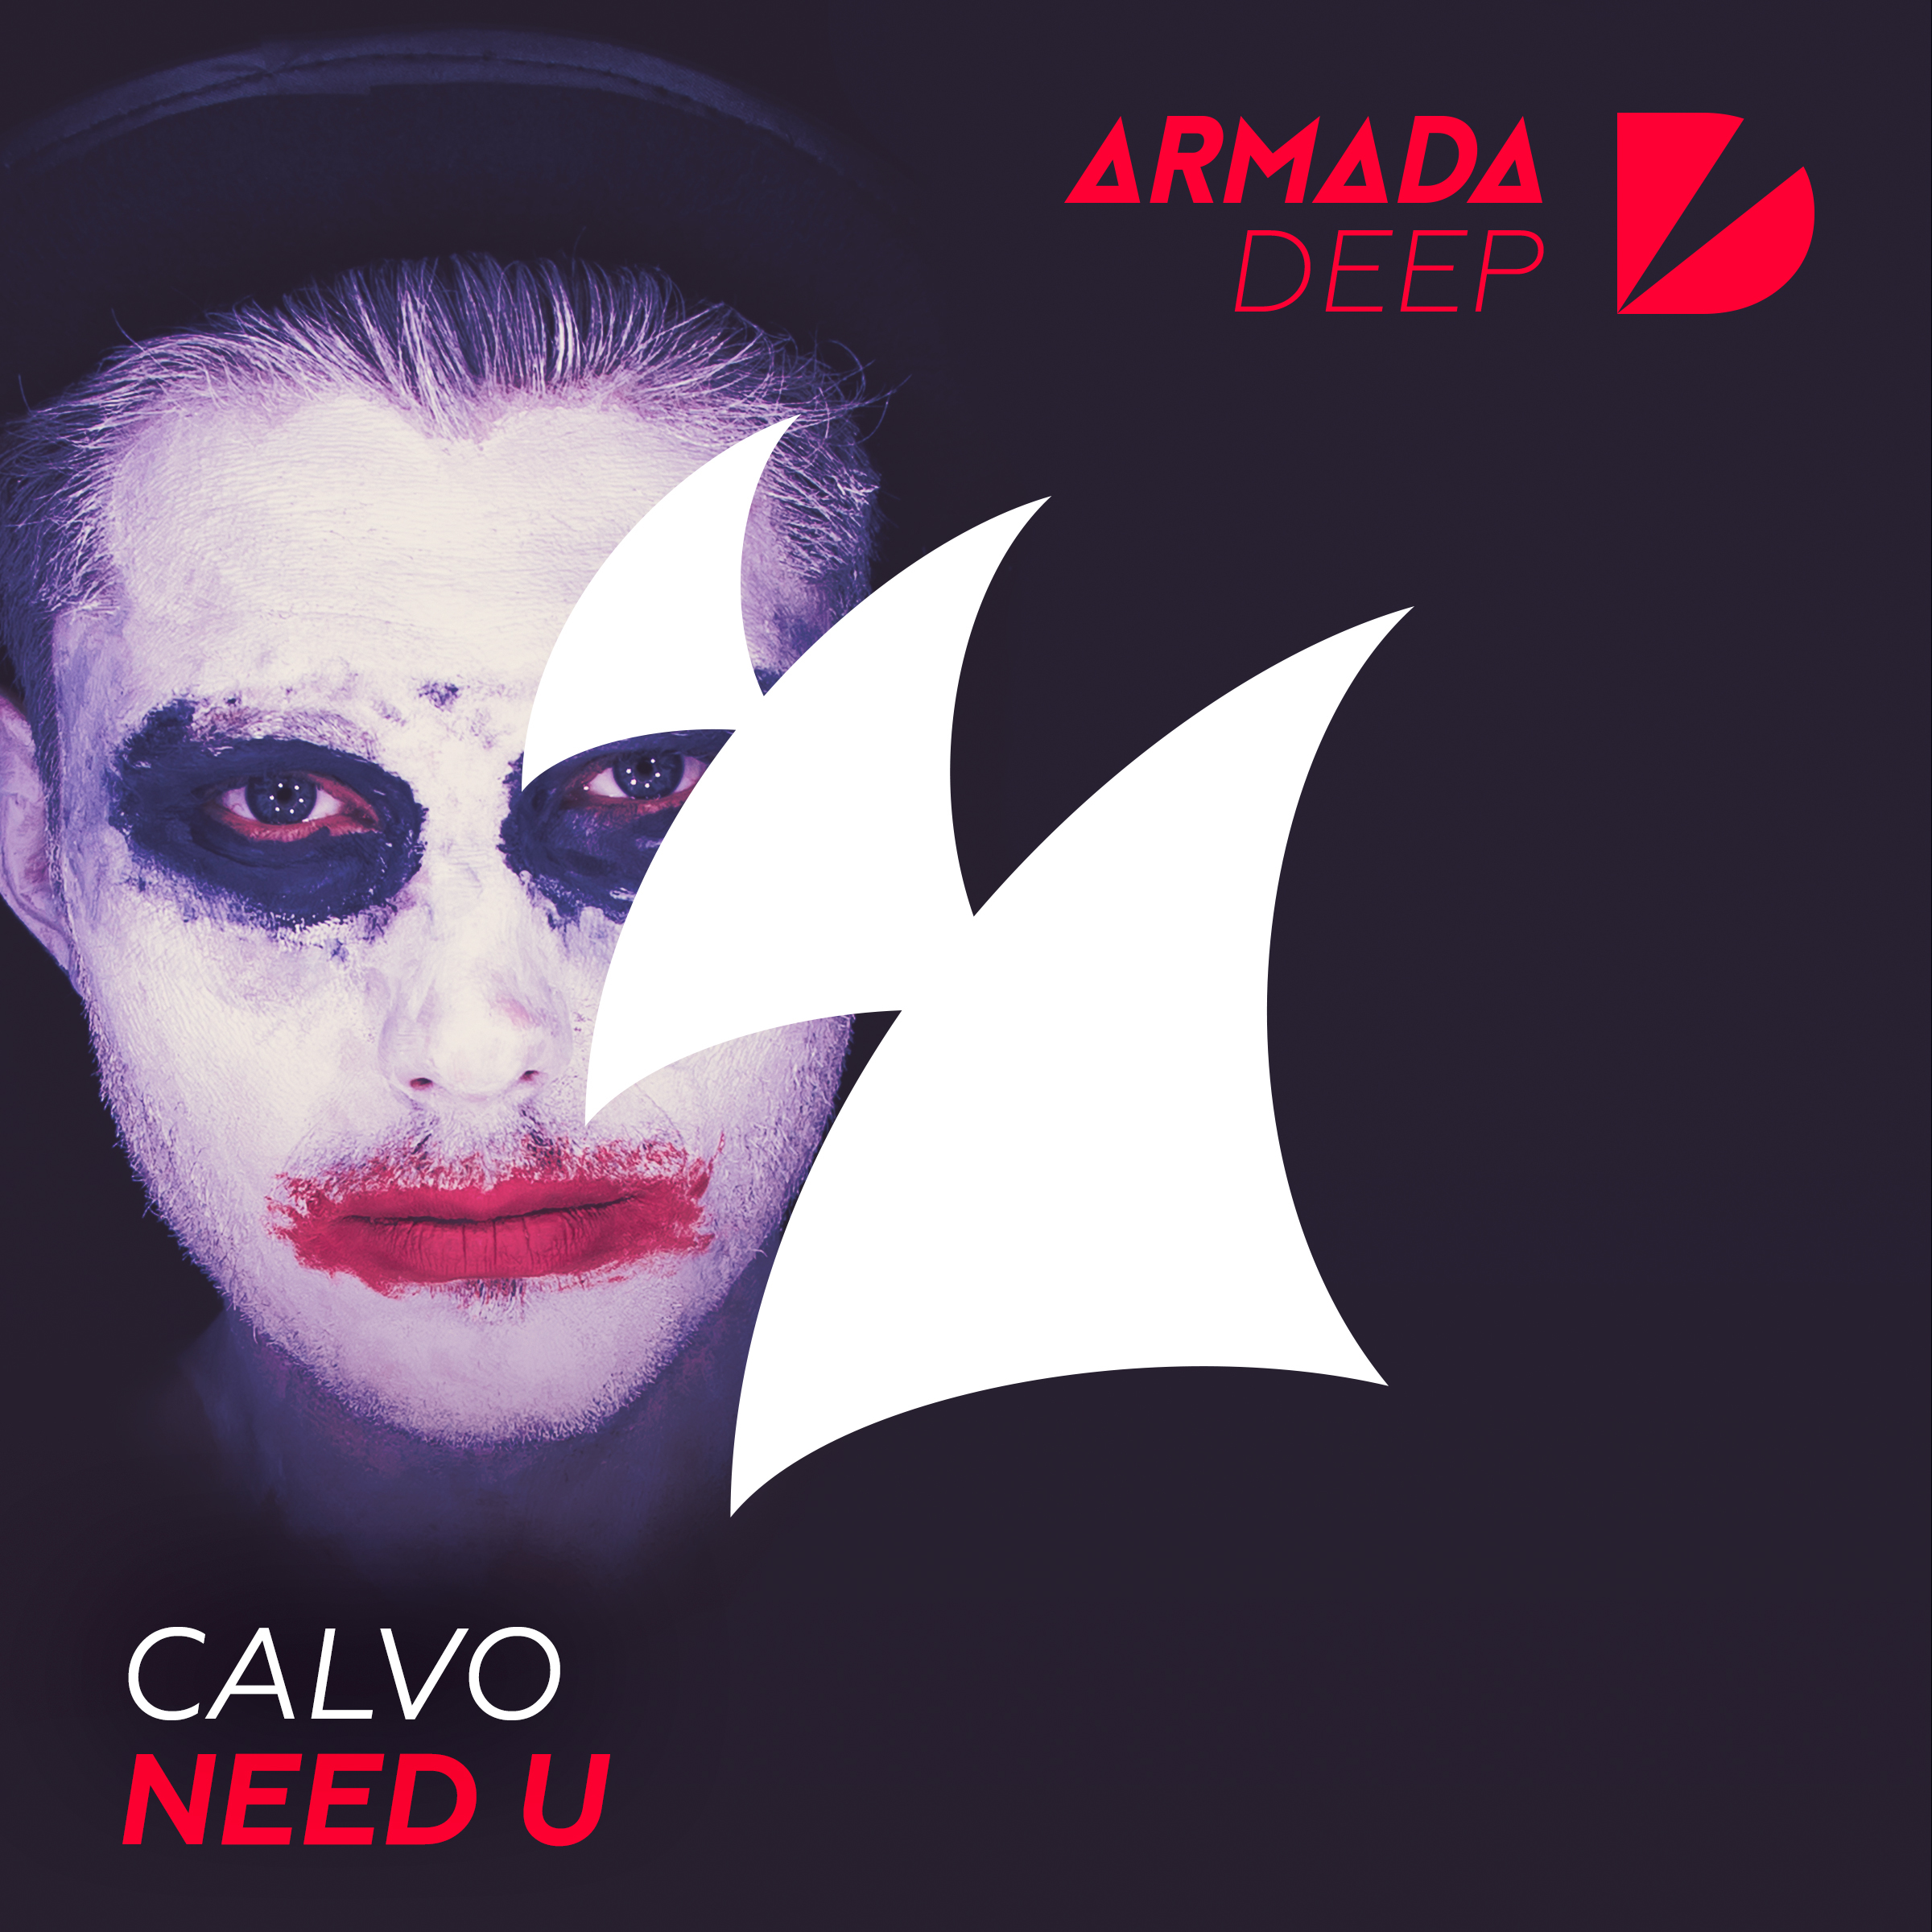 Need U (Original Mix)